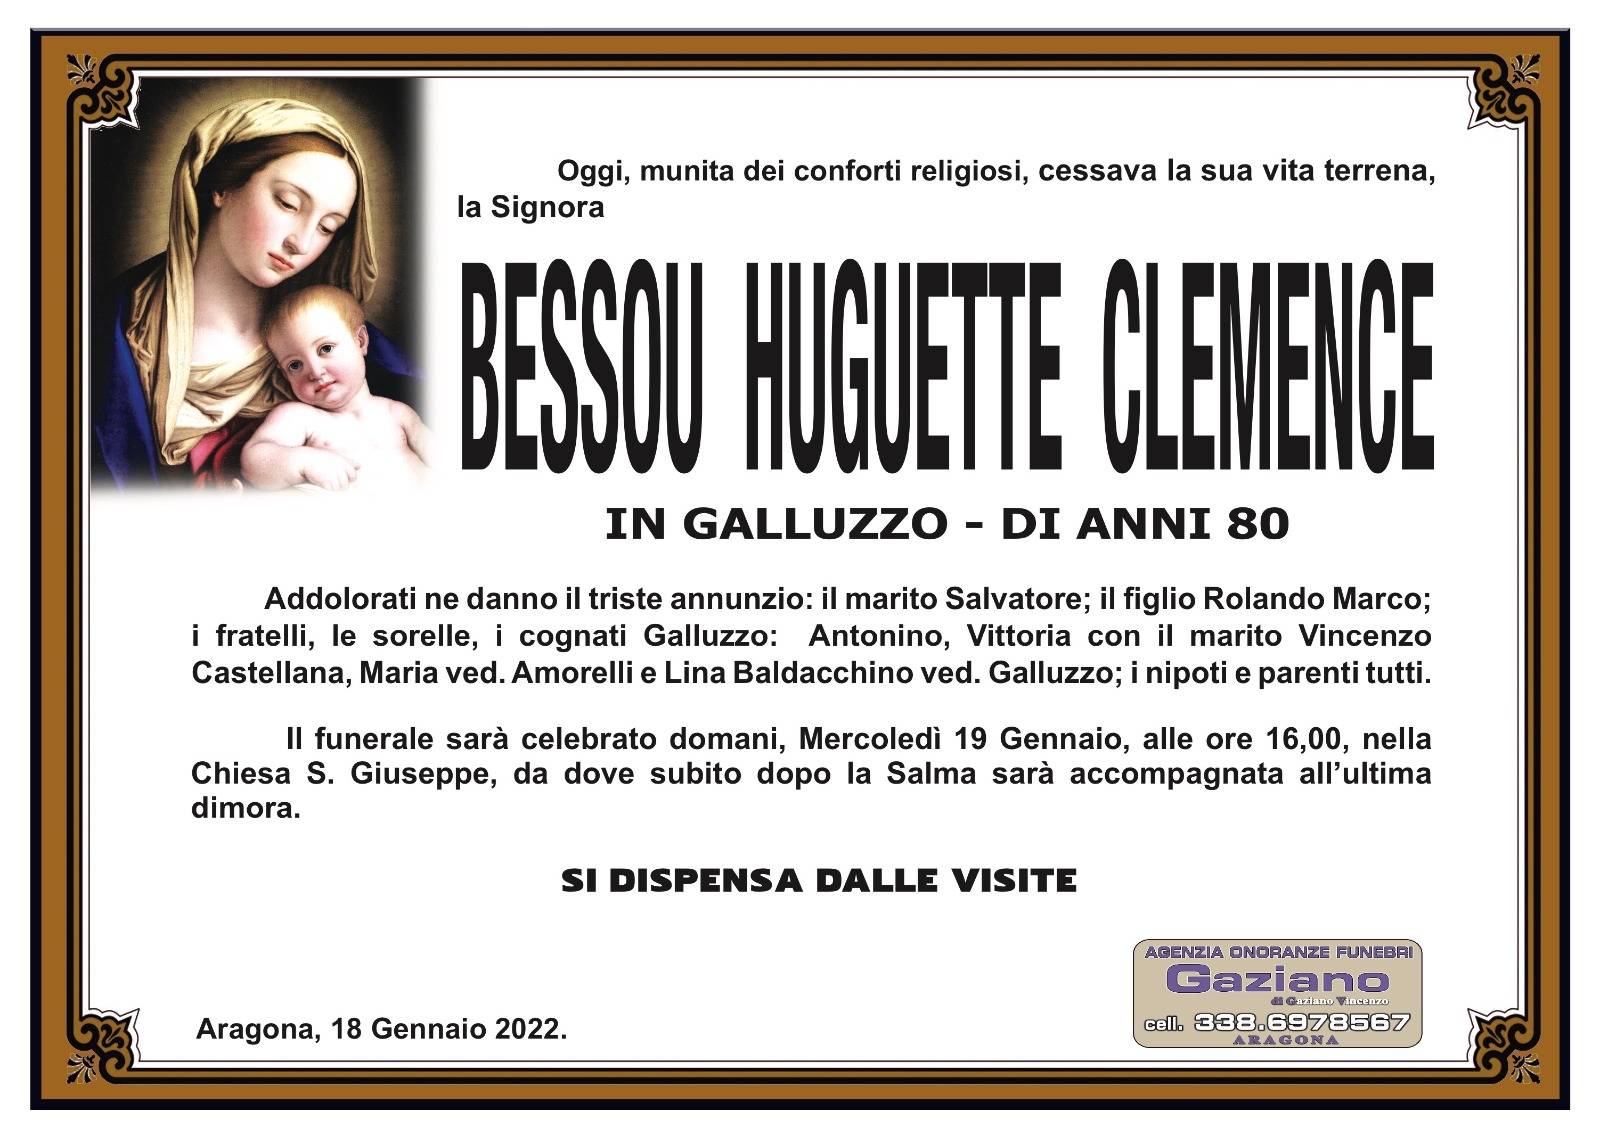 Bessou Huguette Clemence